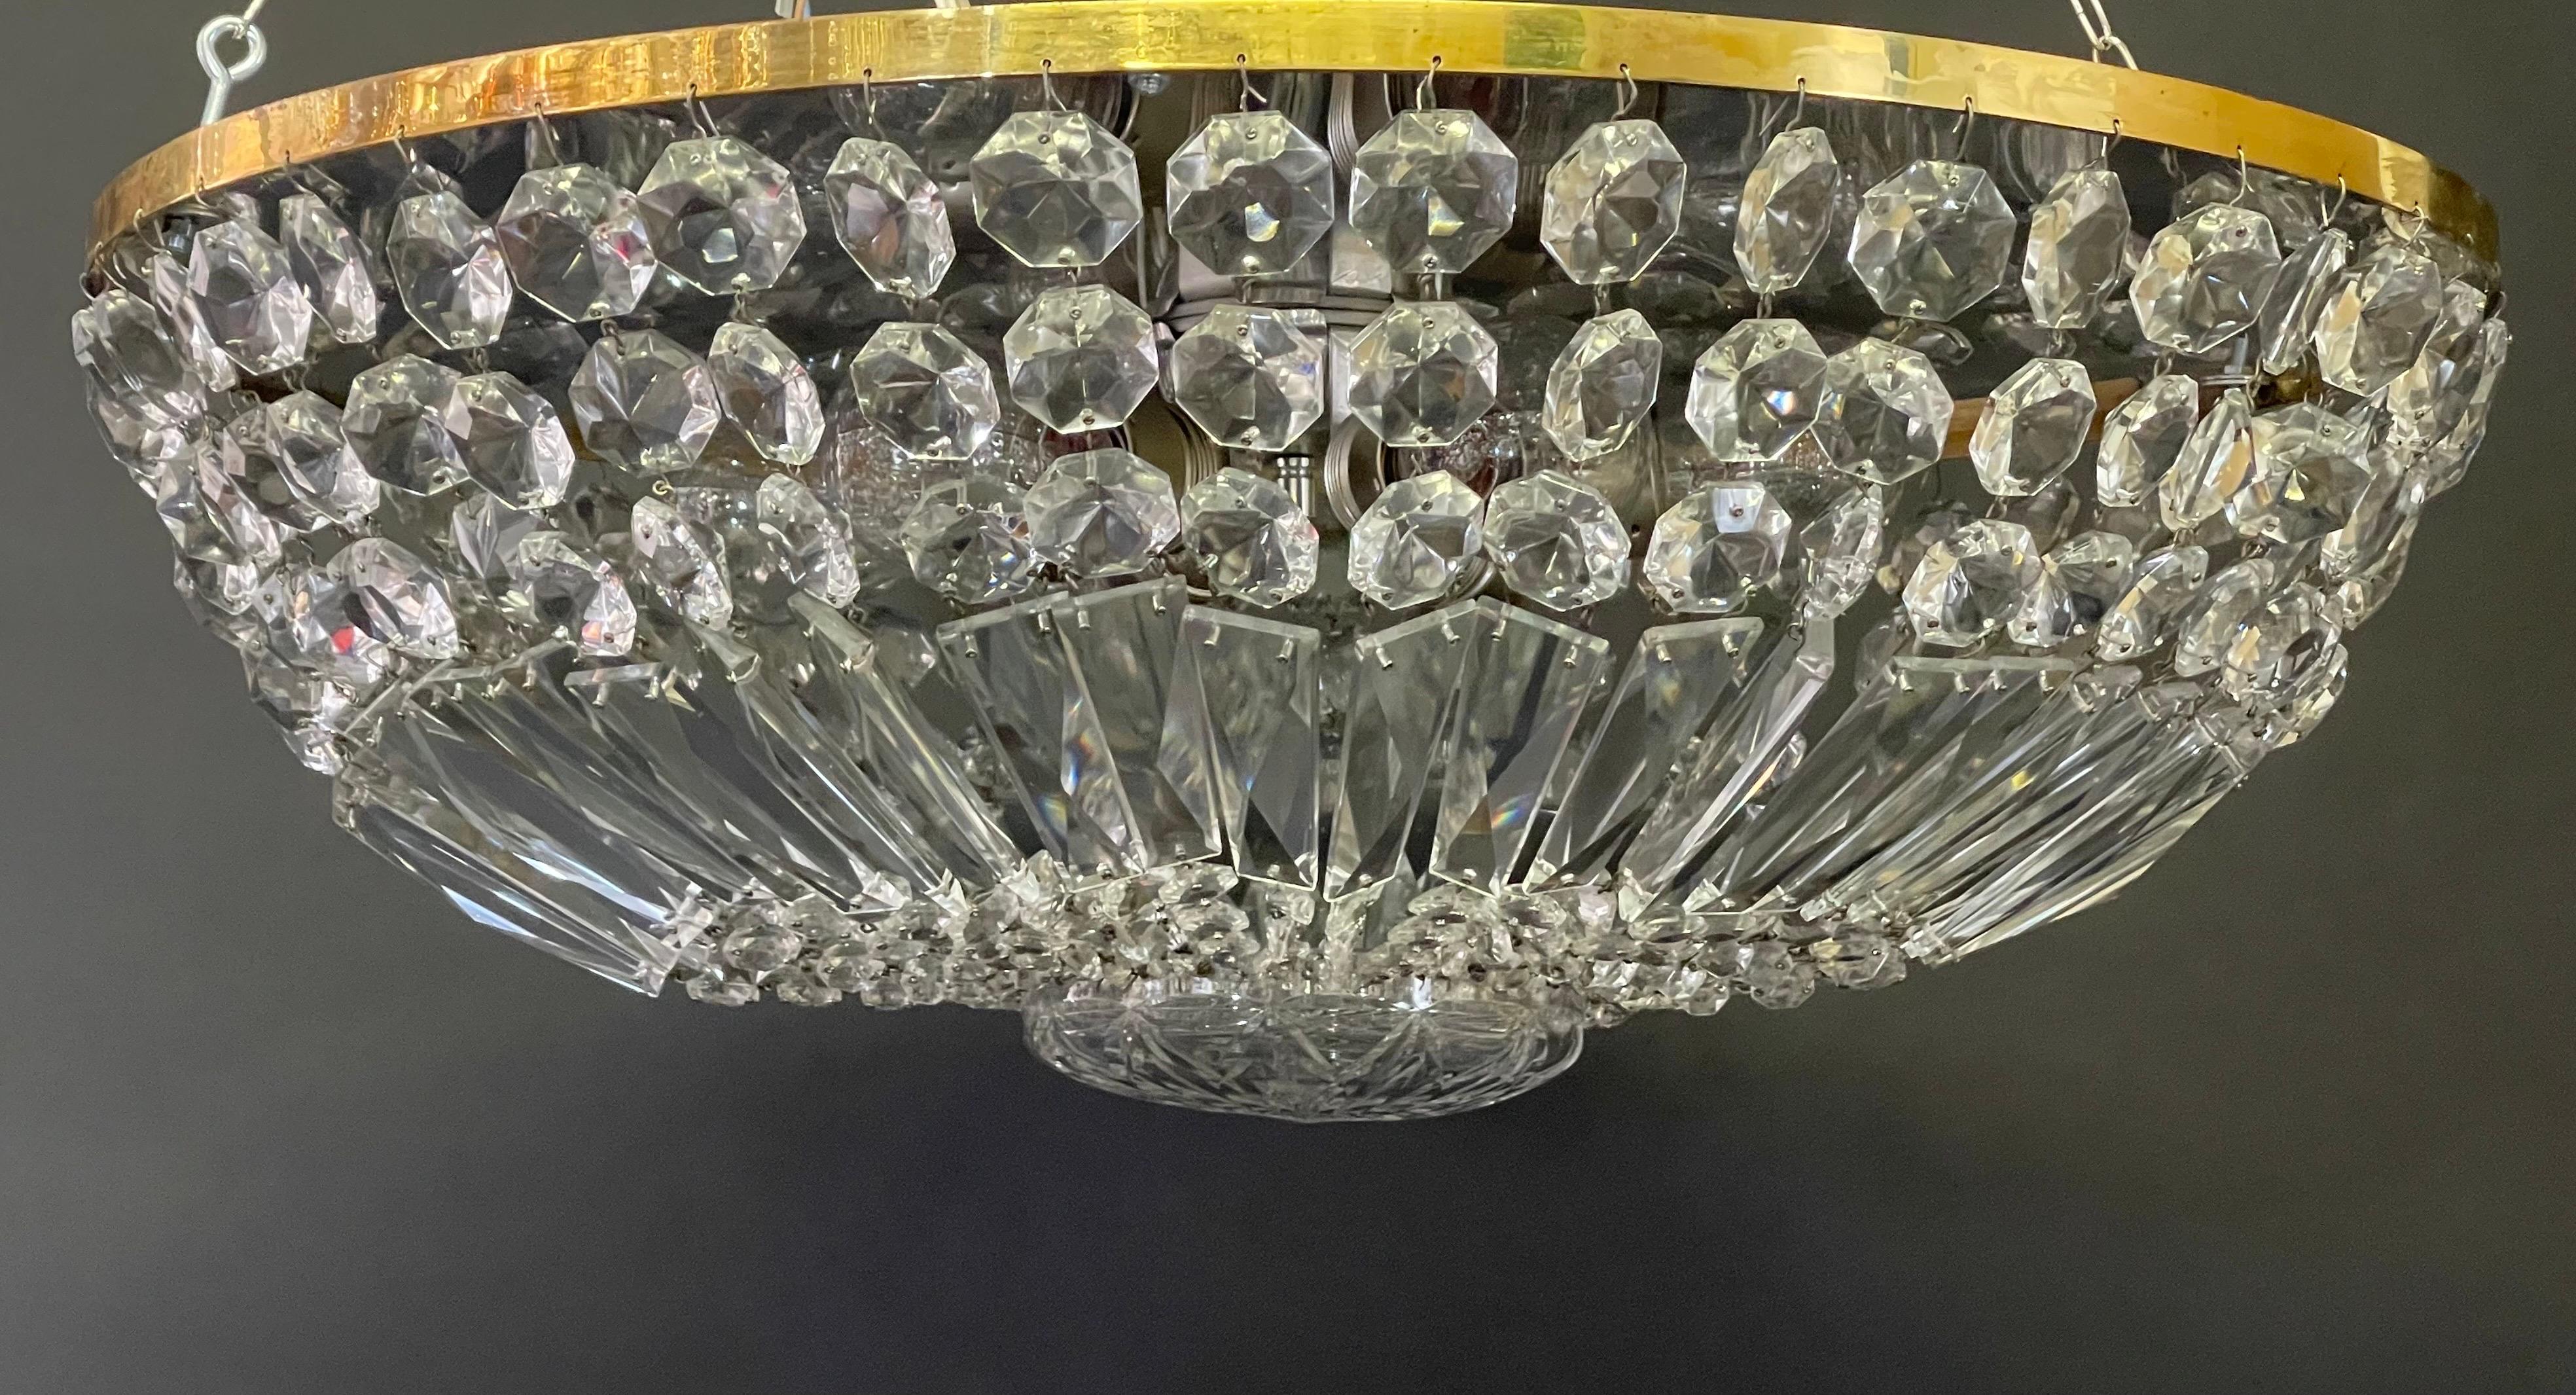 Autrichien Grande monture en cristal taillé autrichienne, Bakalowits, datant des années 1940 environ en vente